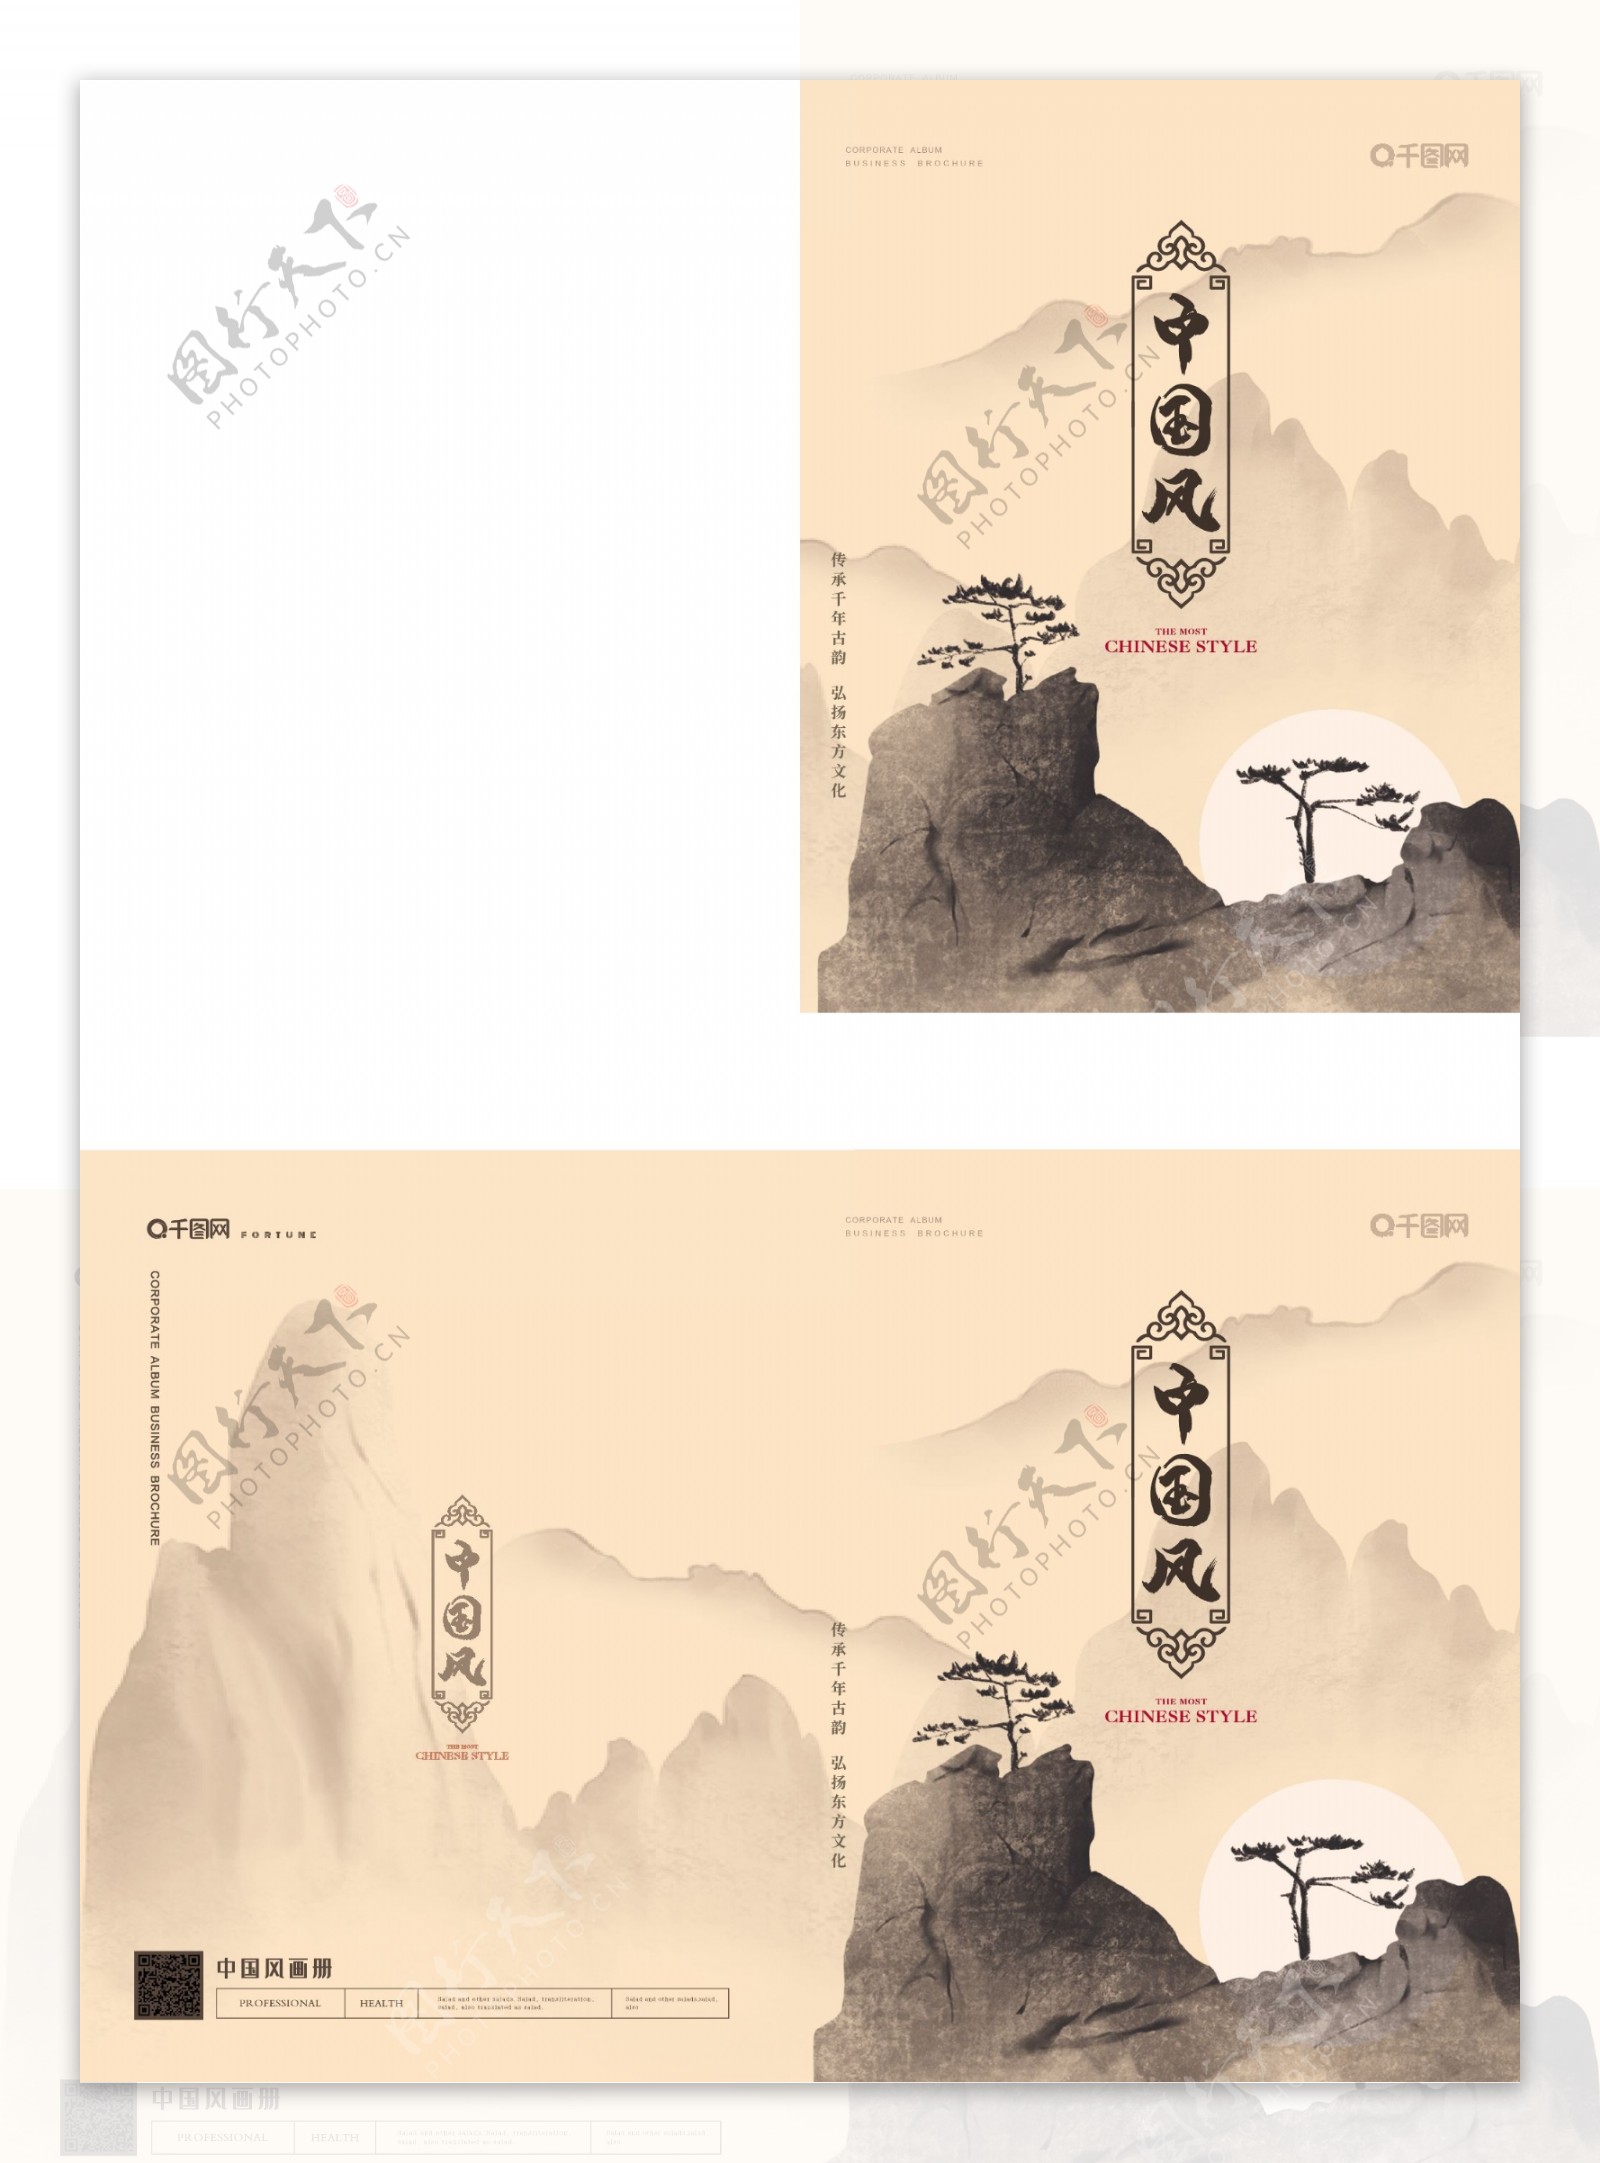 简约中国风画册封面